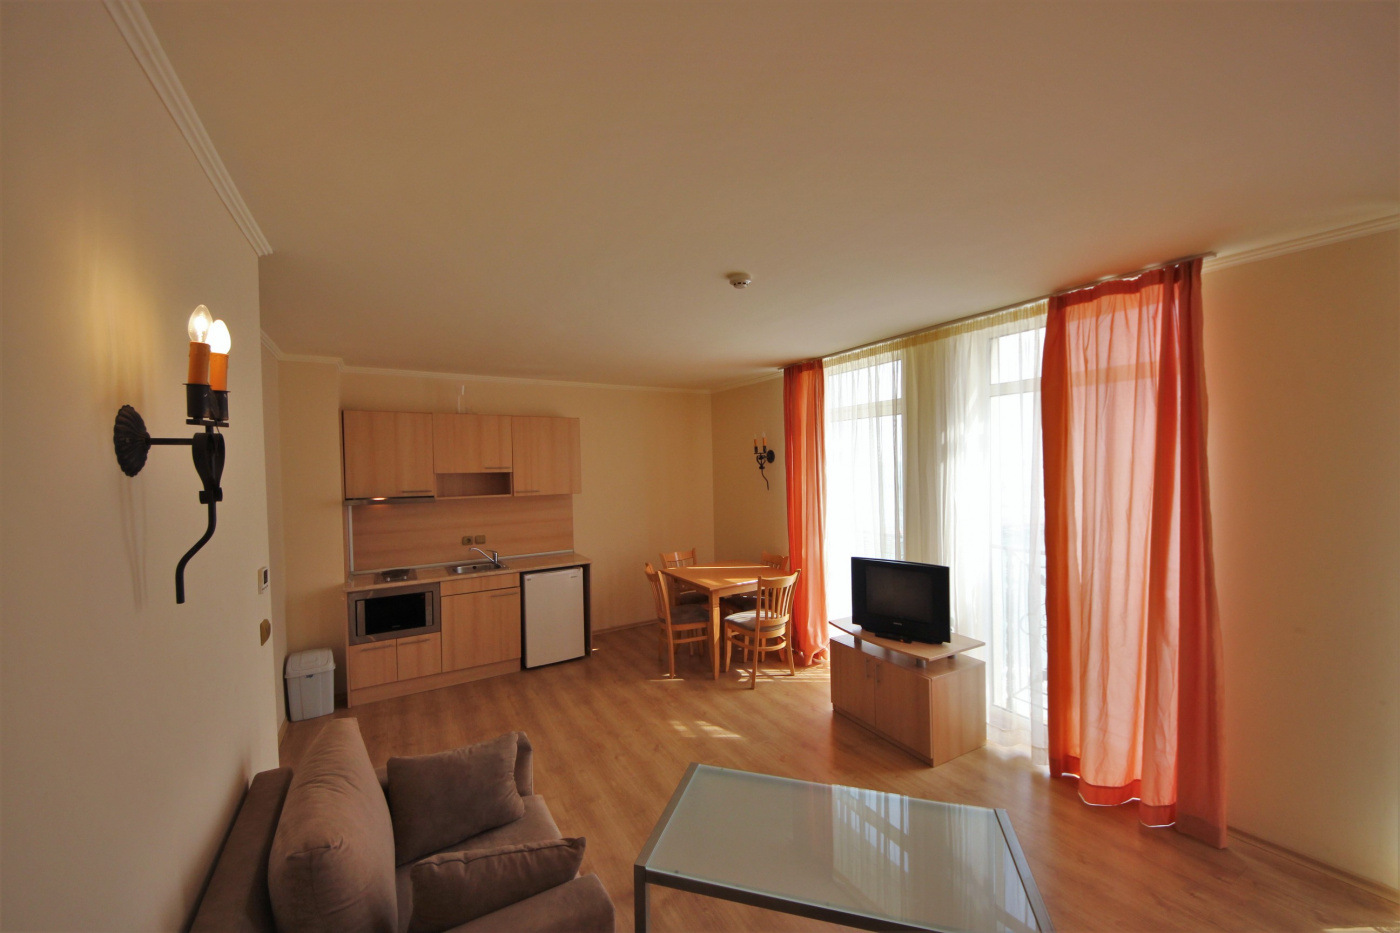 Andalucia Beach apartment C 302